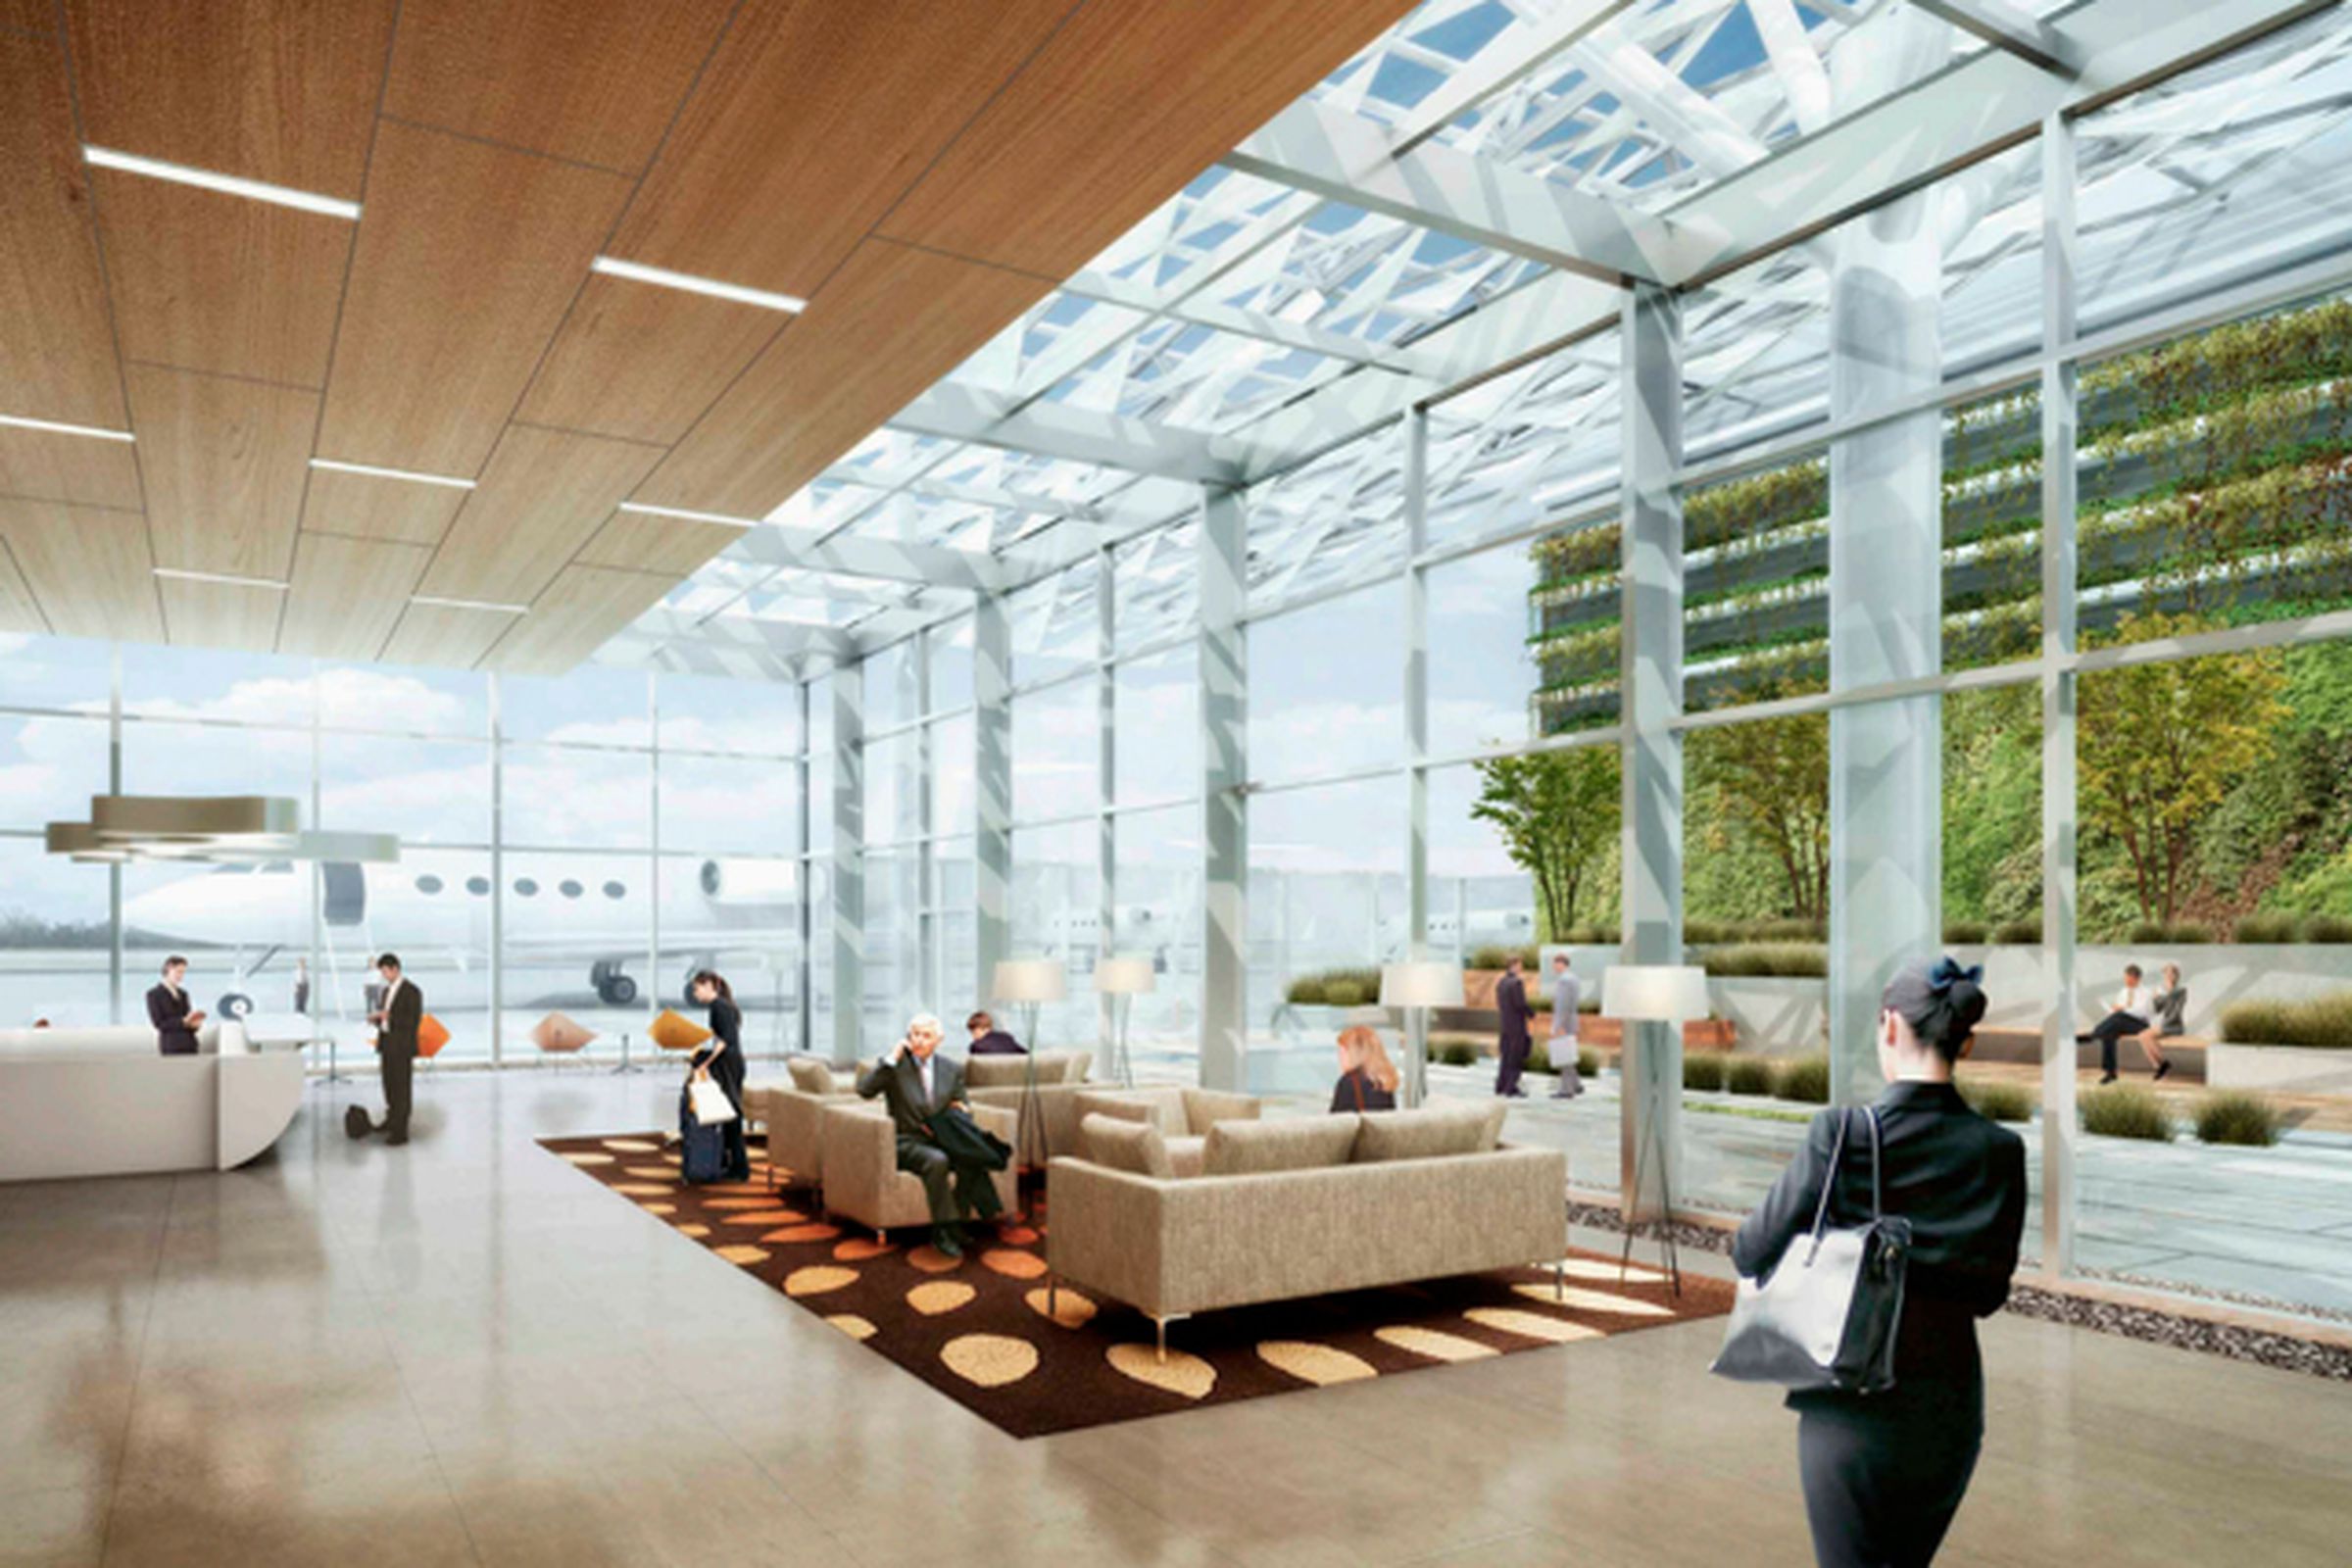 Google San Jose airport proposal, 